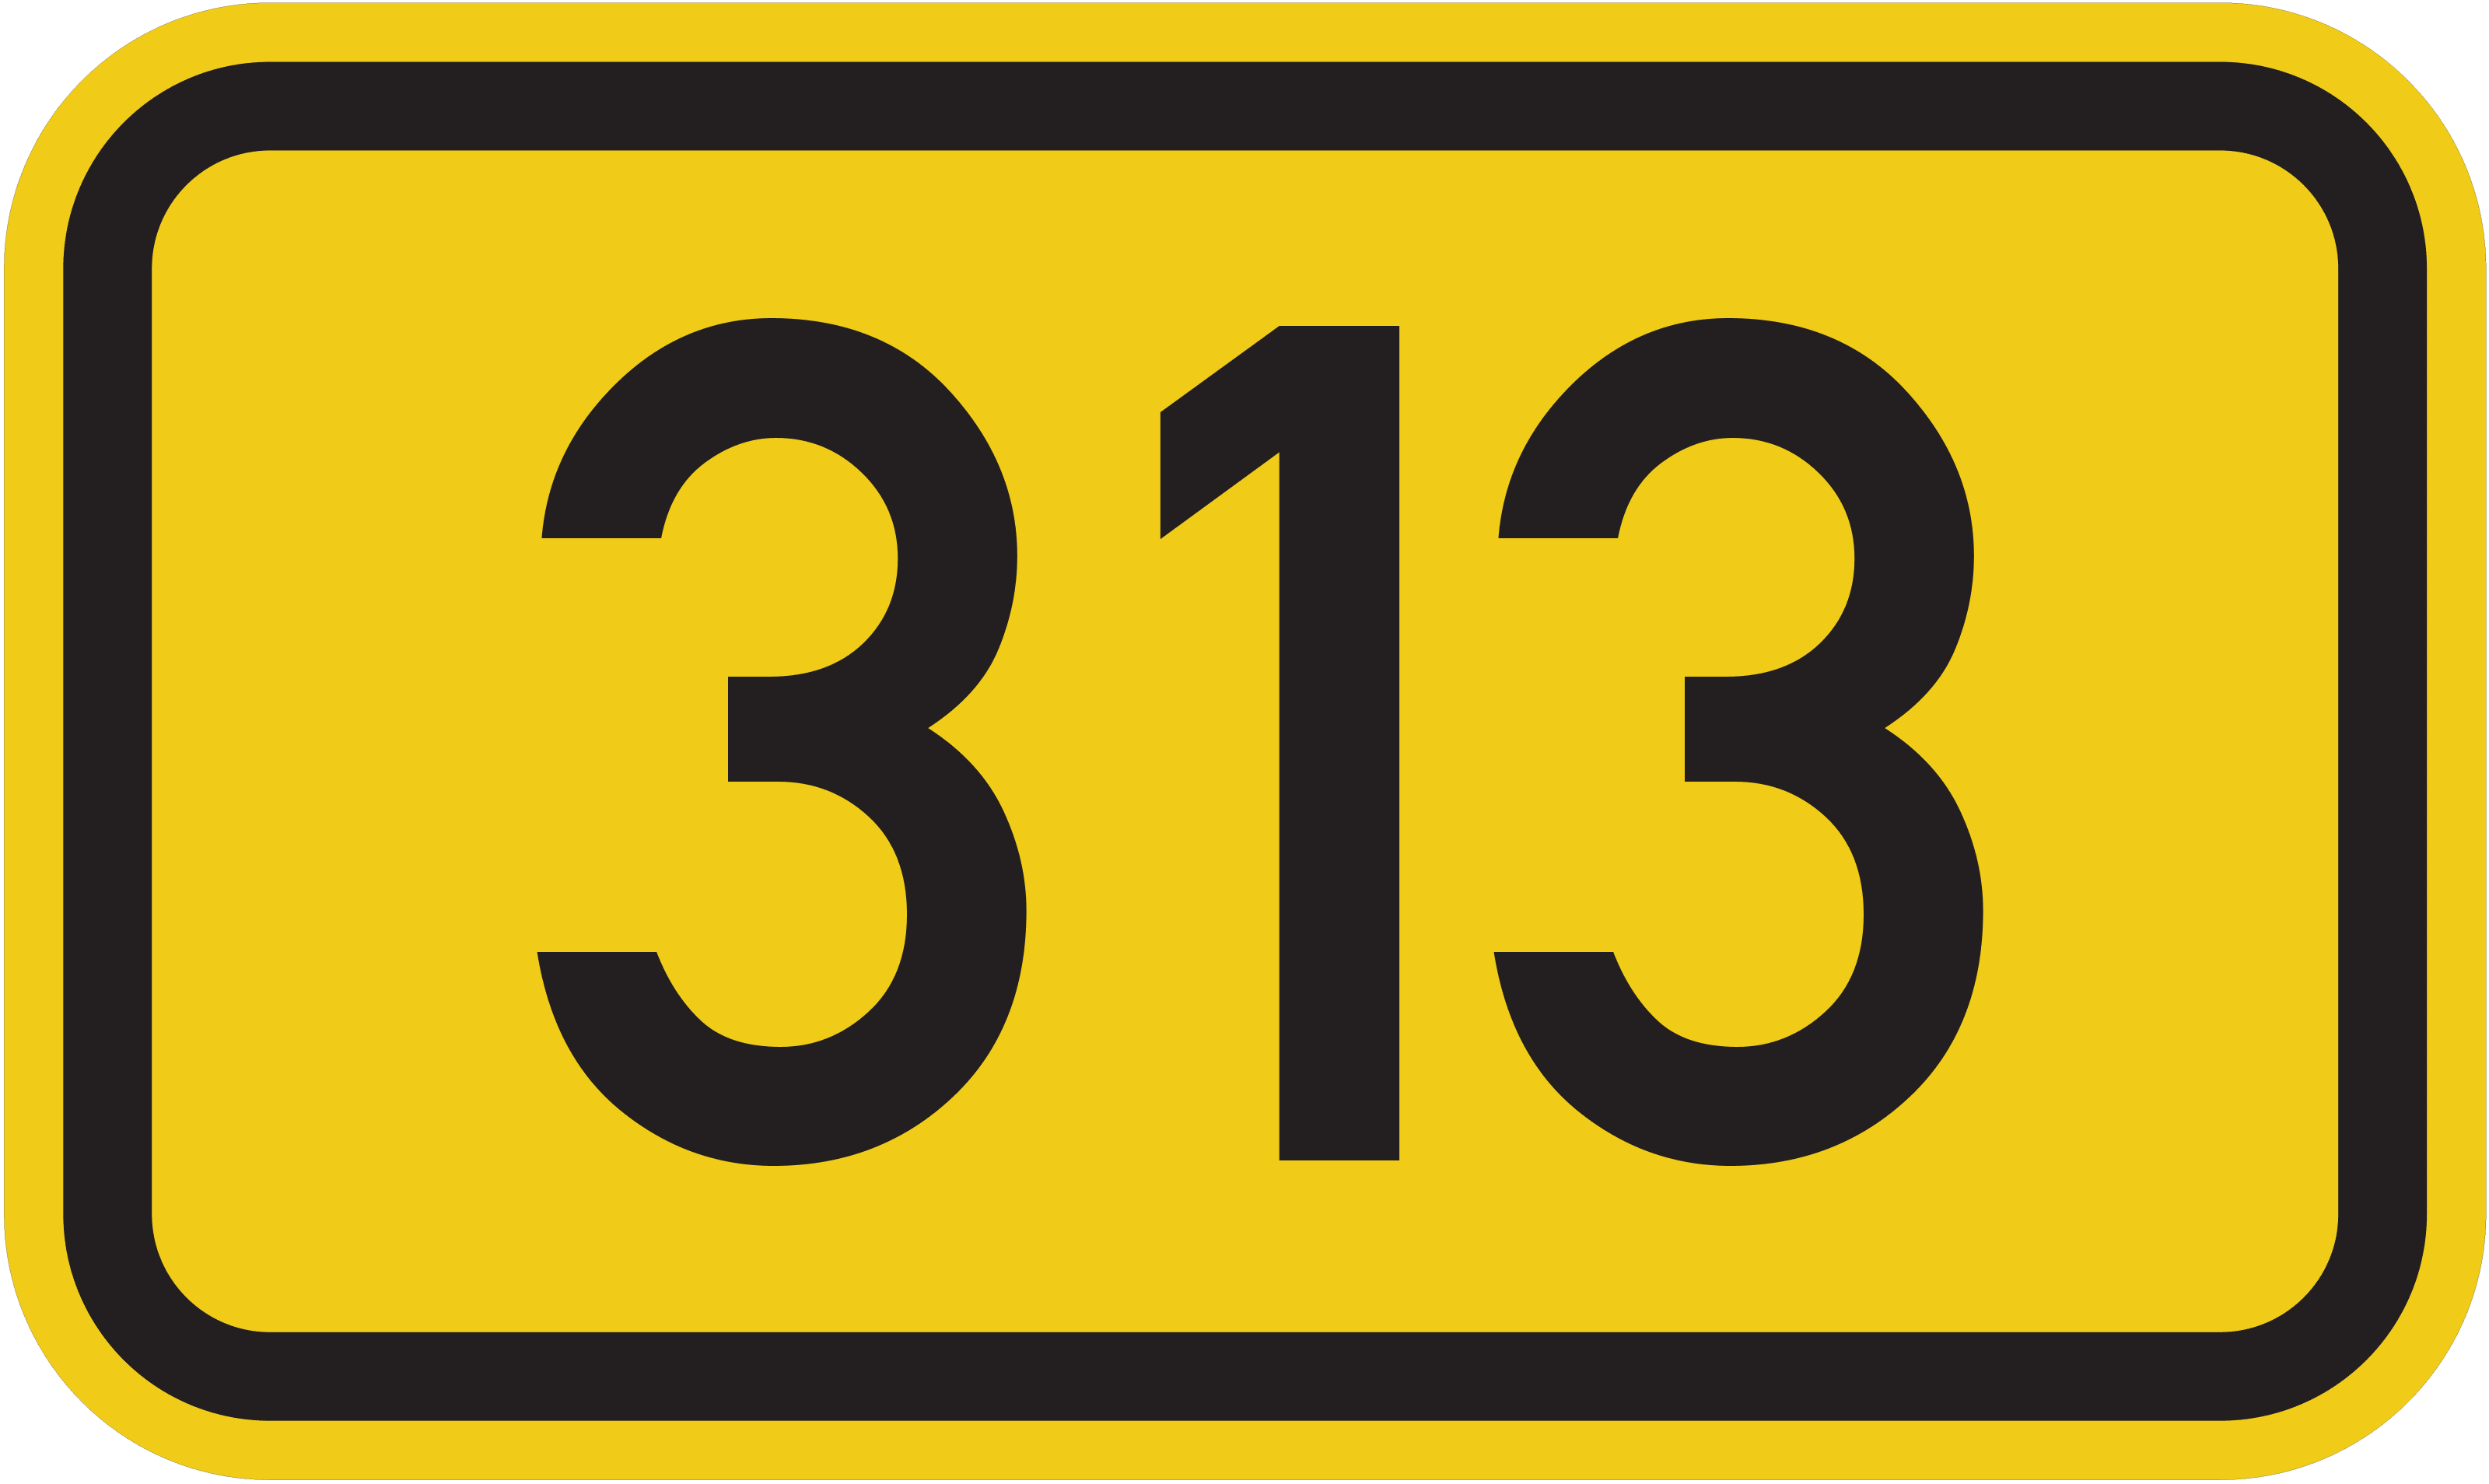 Bundesstraße B 313